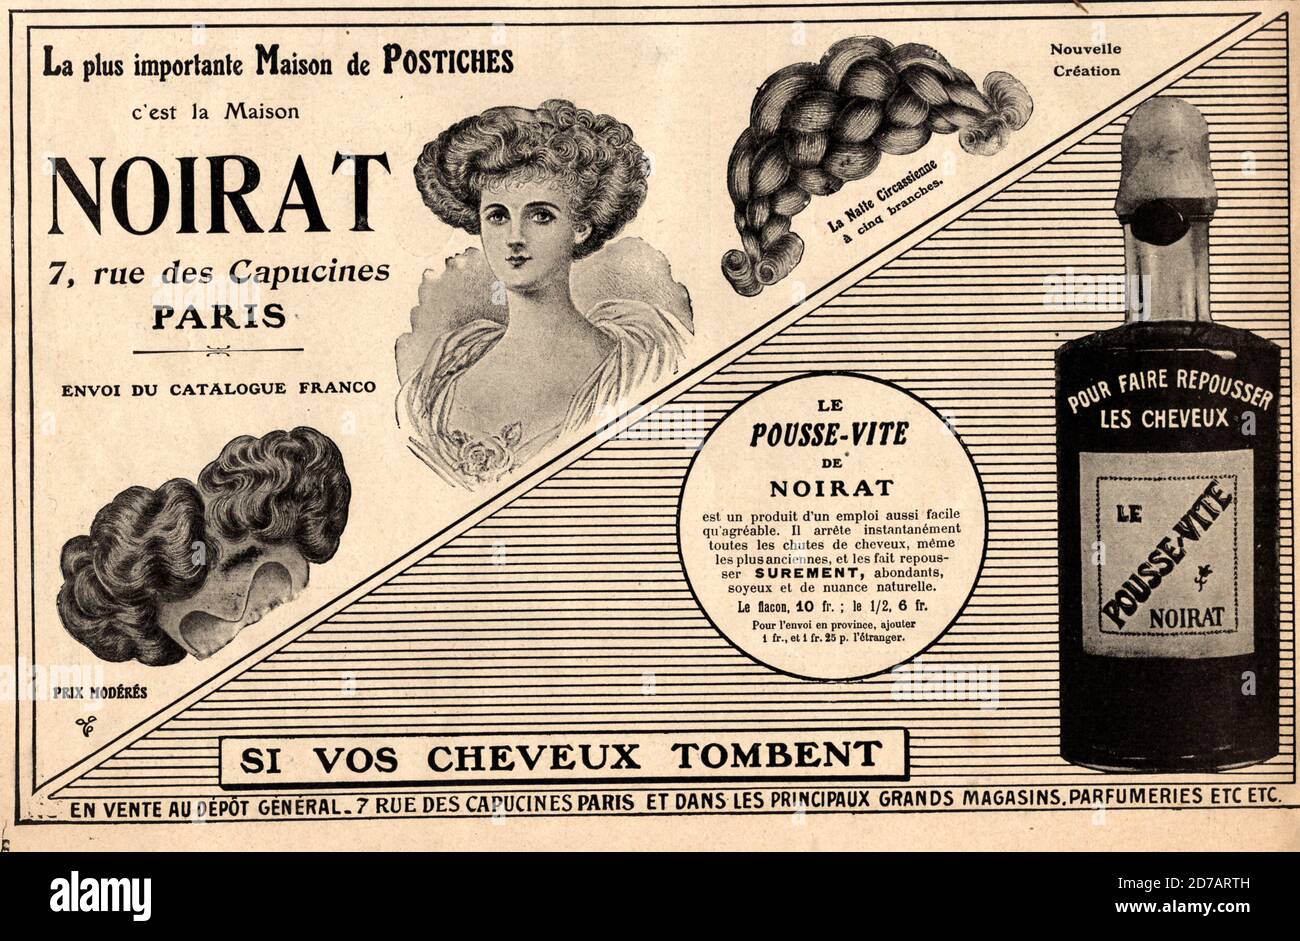 Publicite de presse pour une boutique de vetement a Saint Germain des Pres 1910 Stock Photo